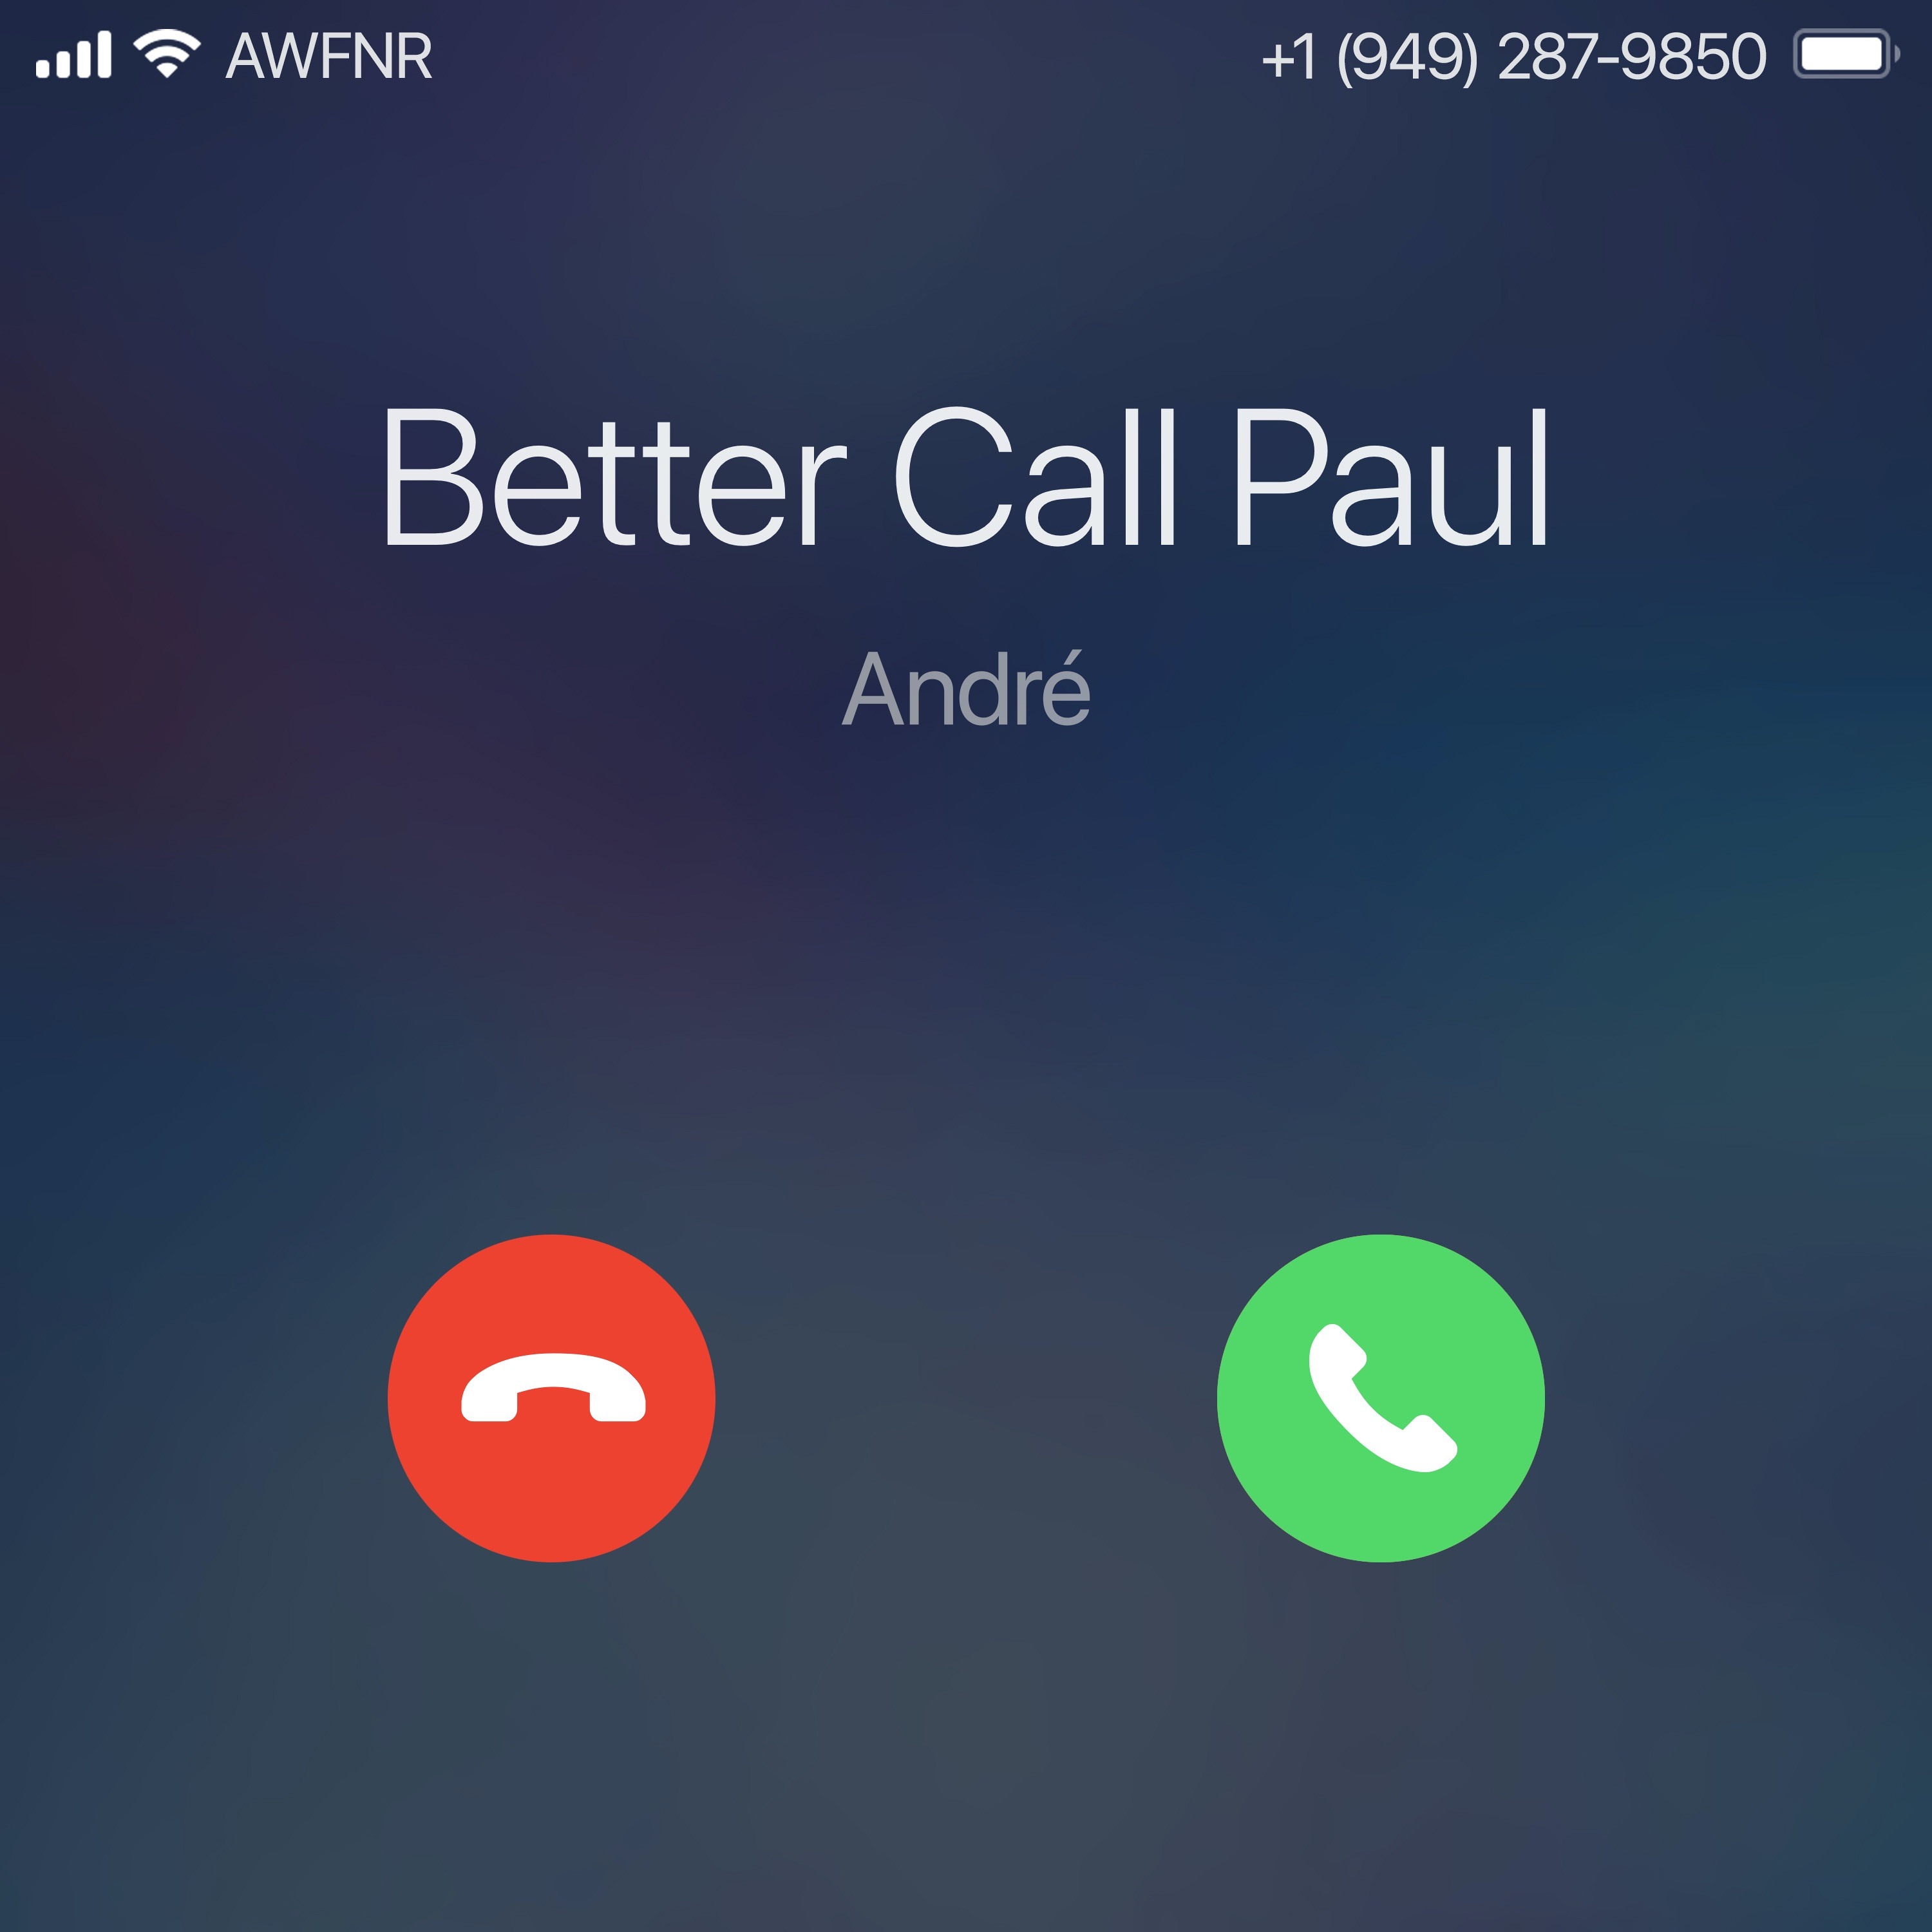 BCP #422 - Paul telefoniert mit André über die Nutzung eines hohen Marketingbudgets für ein Startup